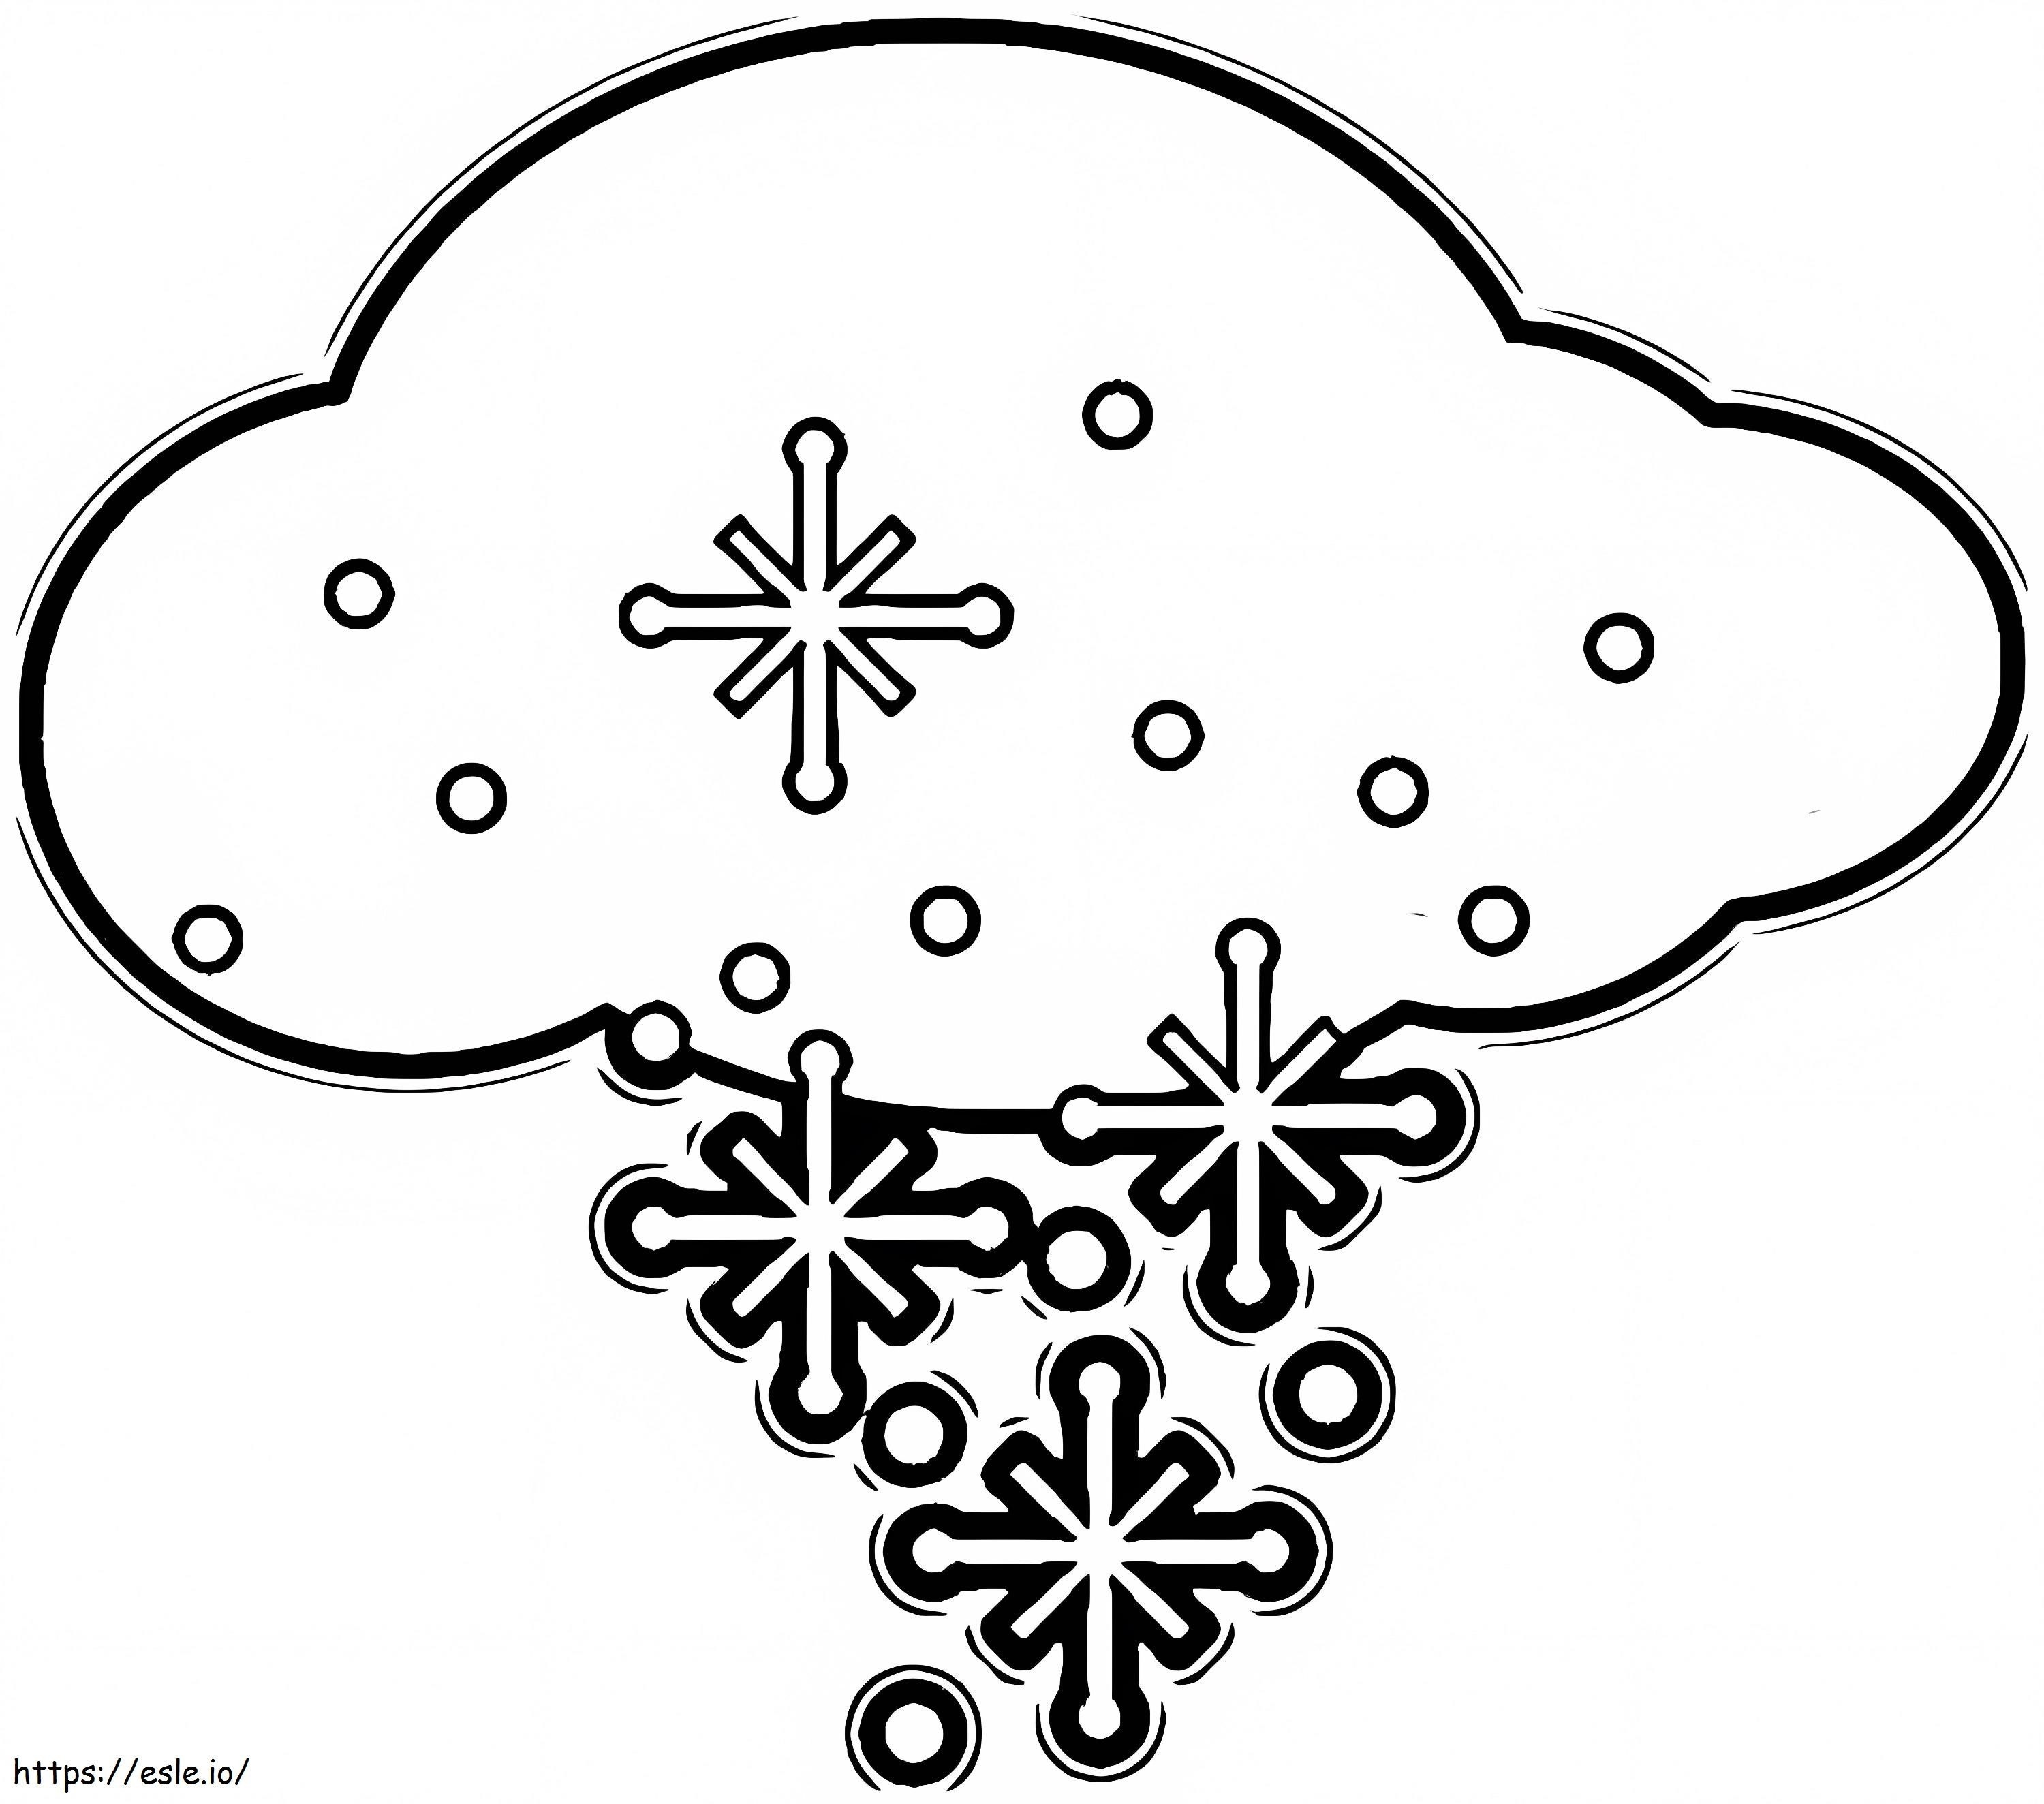 Wolke mit Schneeflocke ausmalbilder